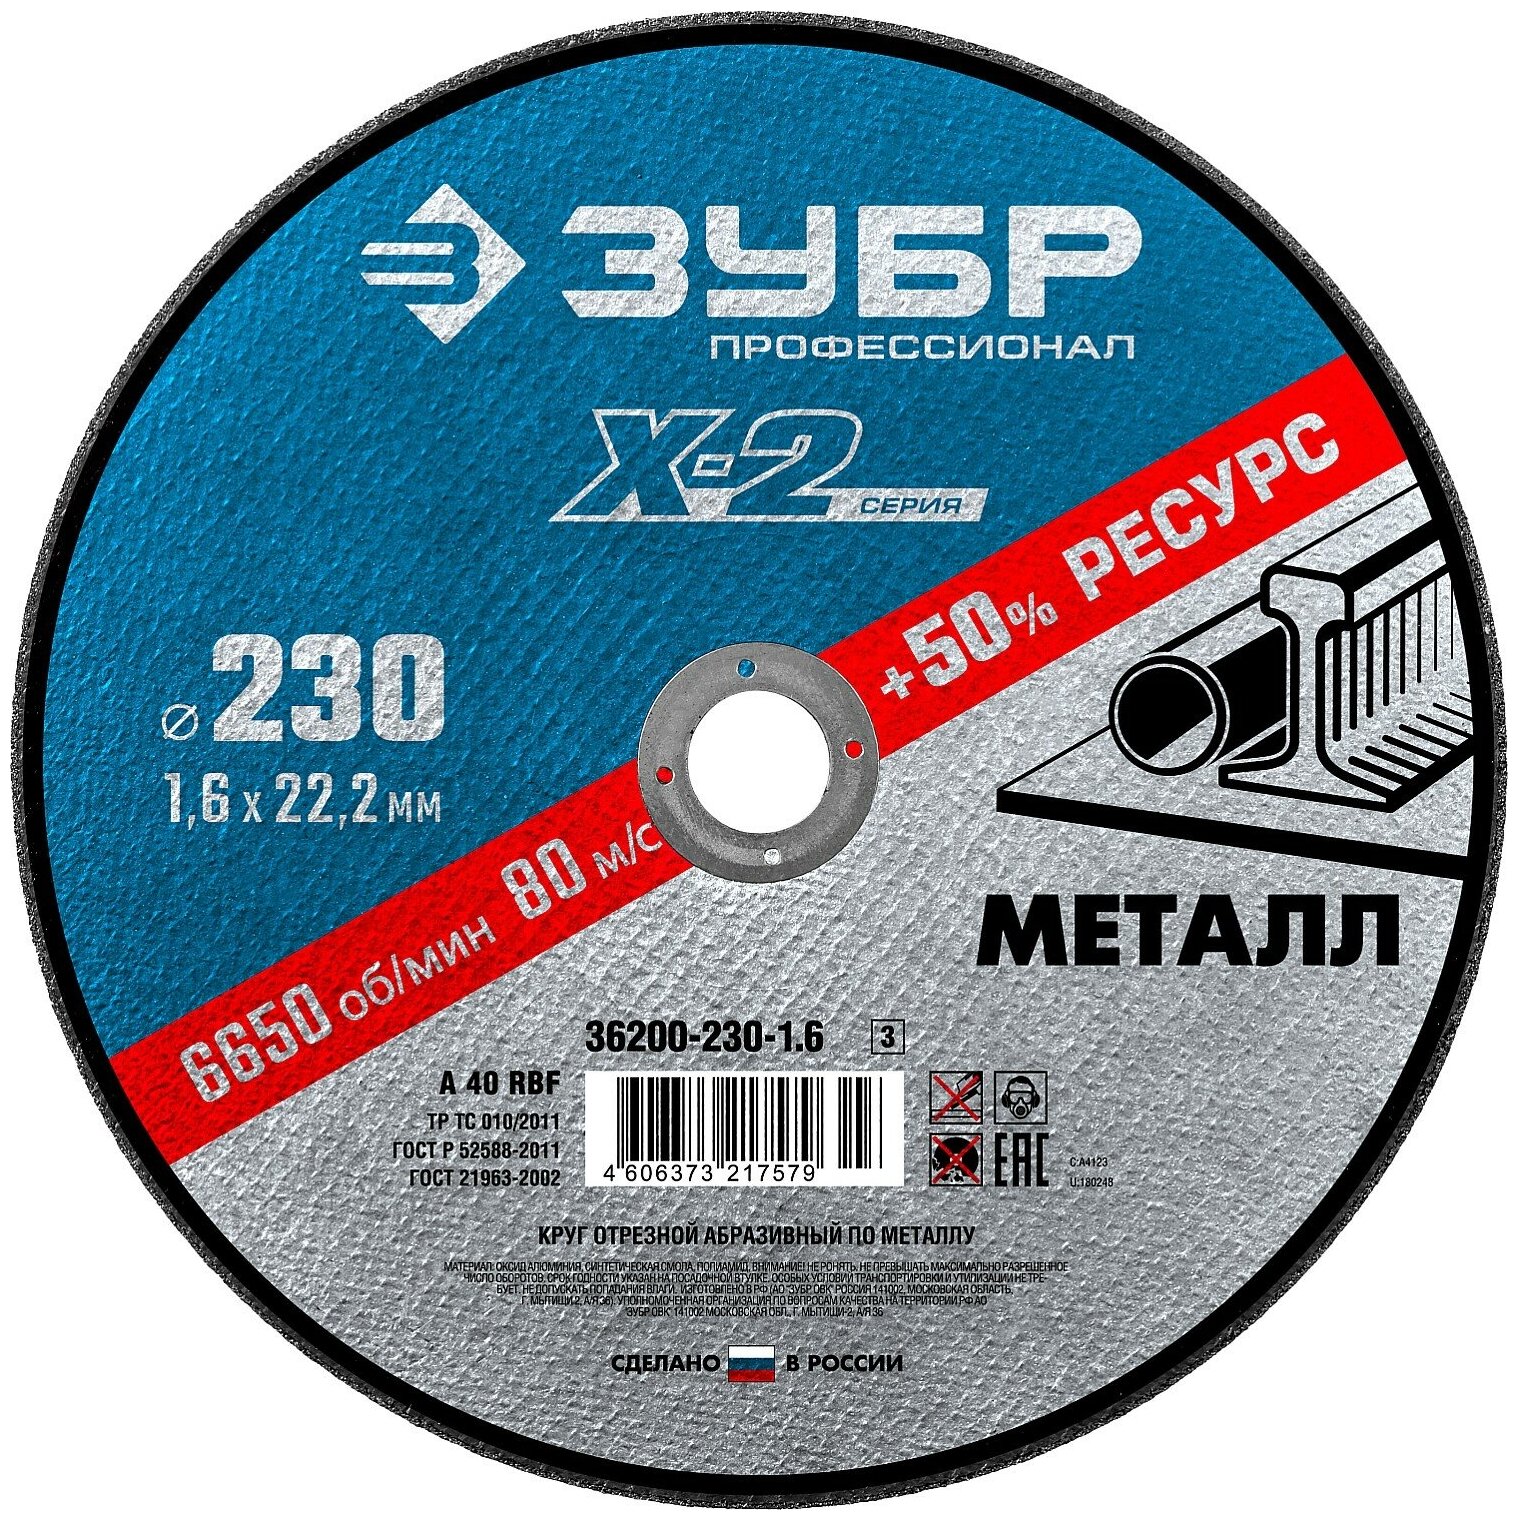 ЗУБР X-2 230 x 1.6 x 22.2 мм, для УШМ, круг отрезной по металлу, профессионал (36200-230-1.6)